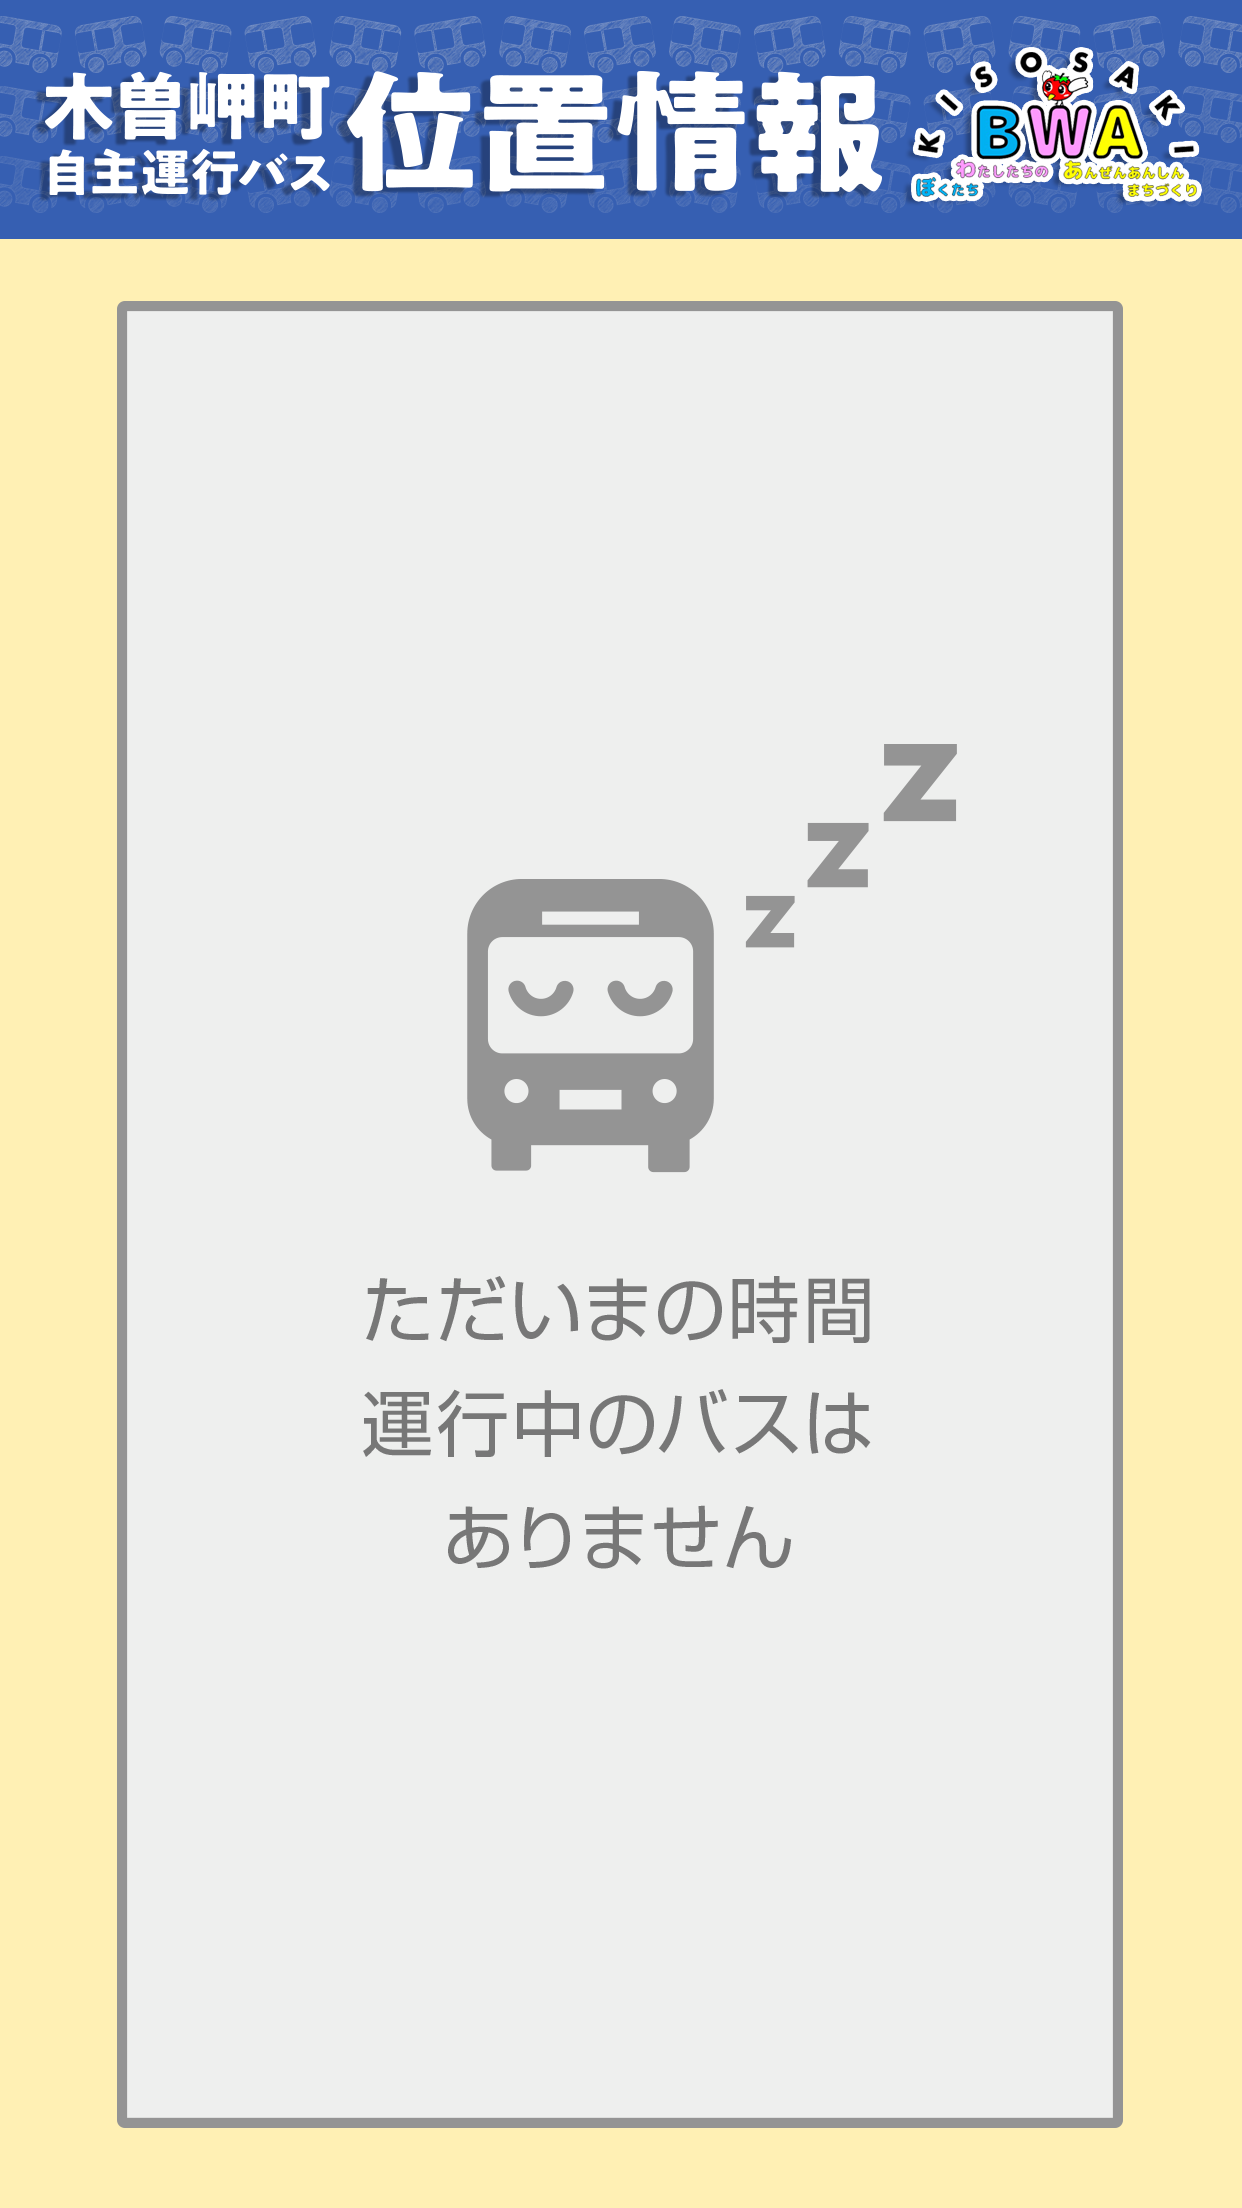 木曽岬町自主運行バスの位置情報画像